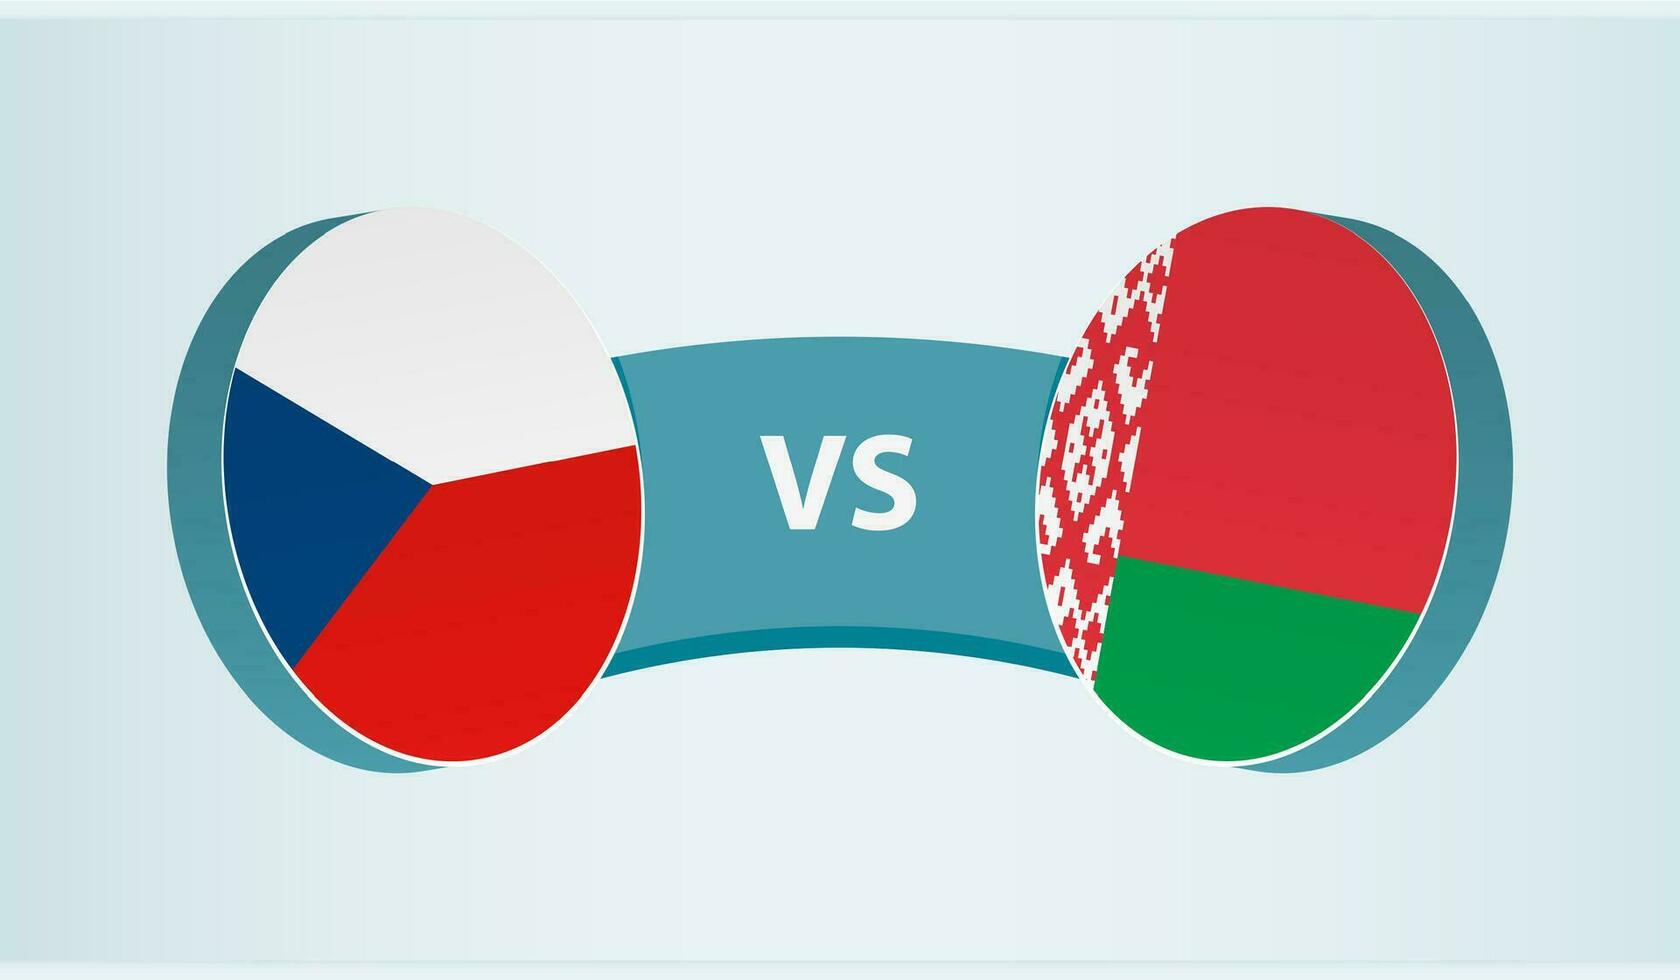 tcheco república versus bielorrússia, equipe Esportes concorrência conceito. vetor